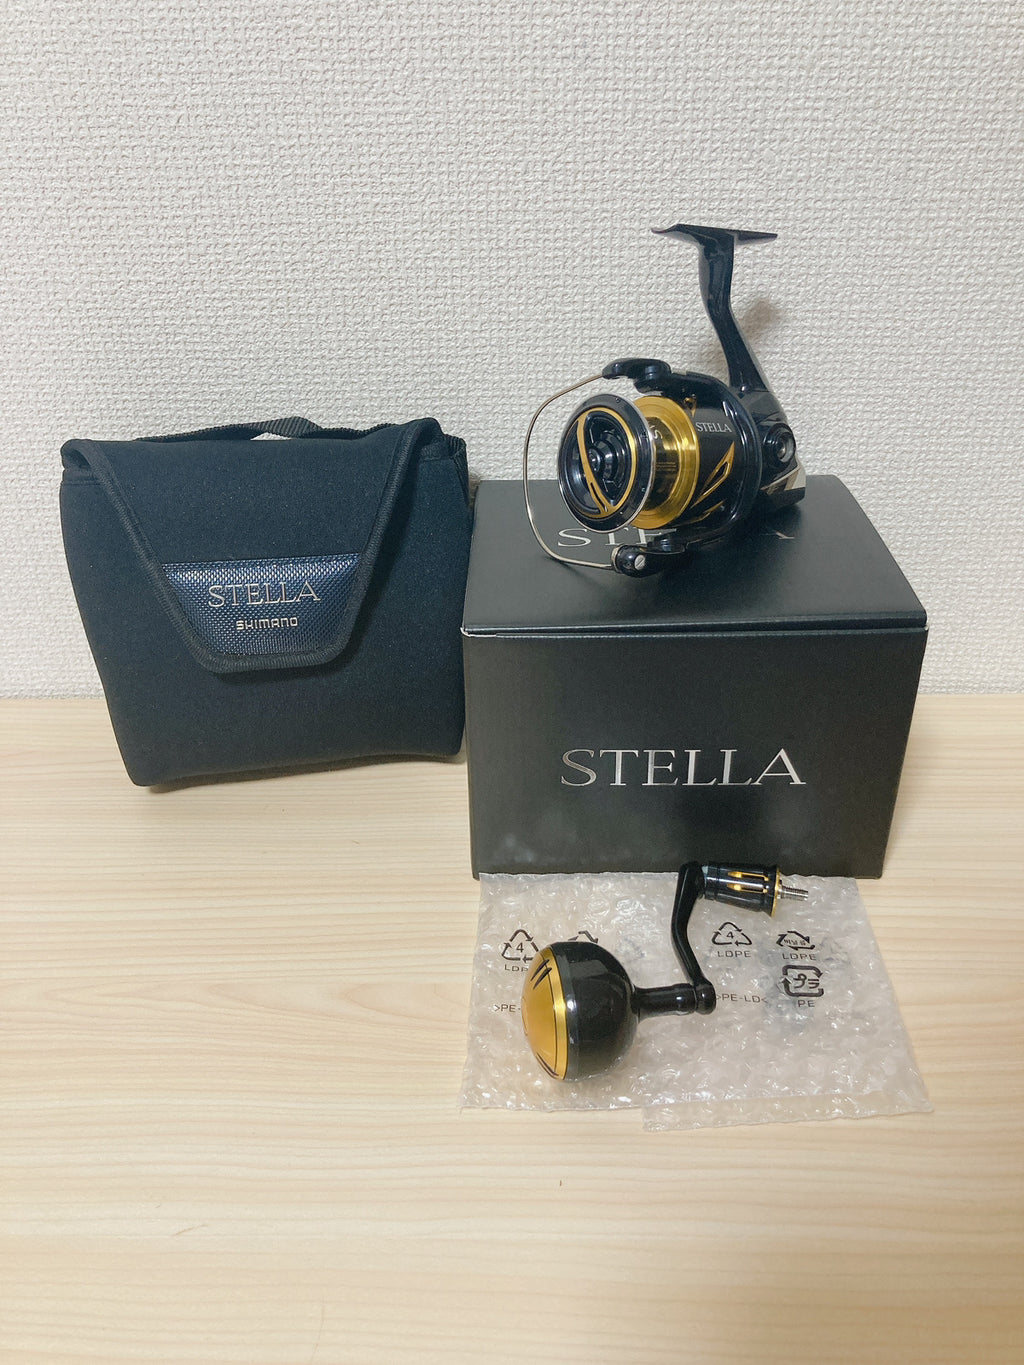 Shimano Spinning Reel 20 STELLA SW 4000XG 6.2:1 Saltwater Fishing Reel IN  BOX